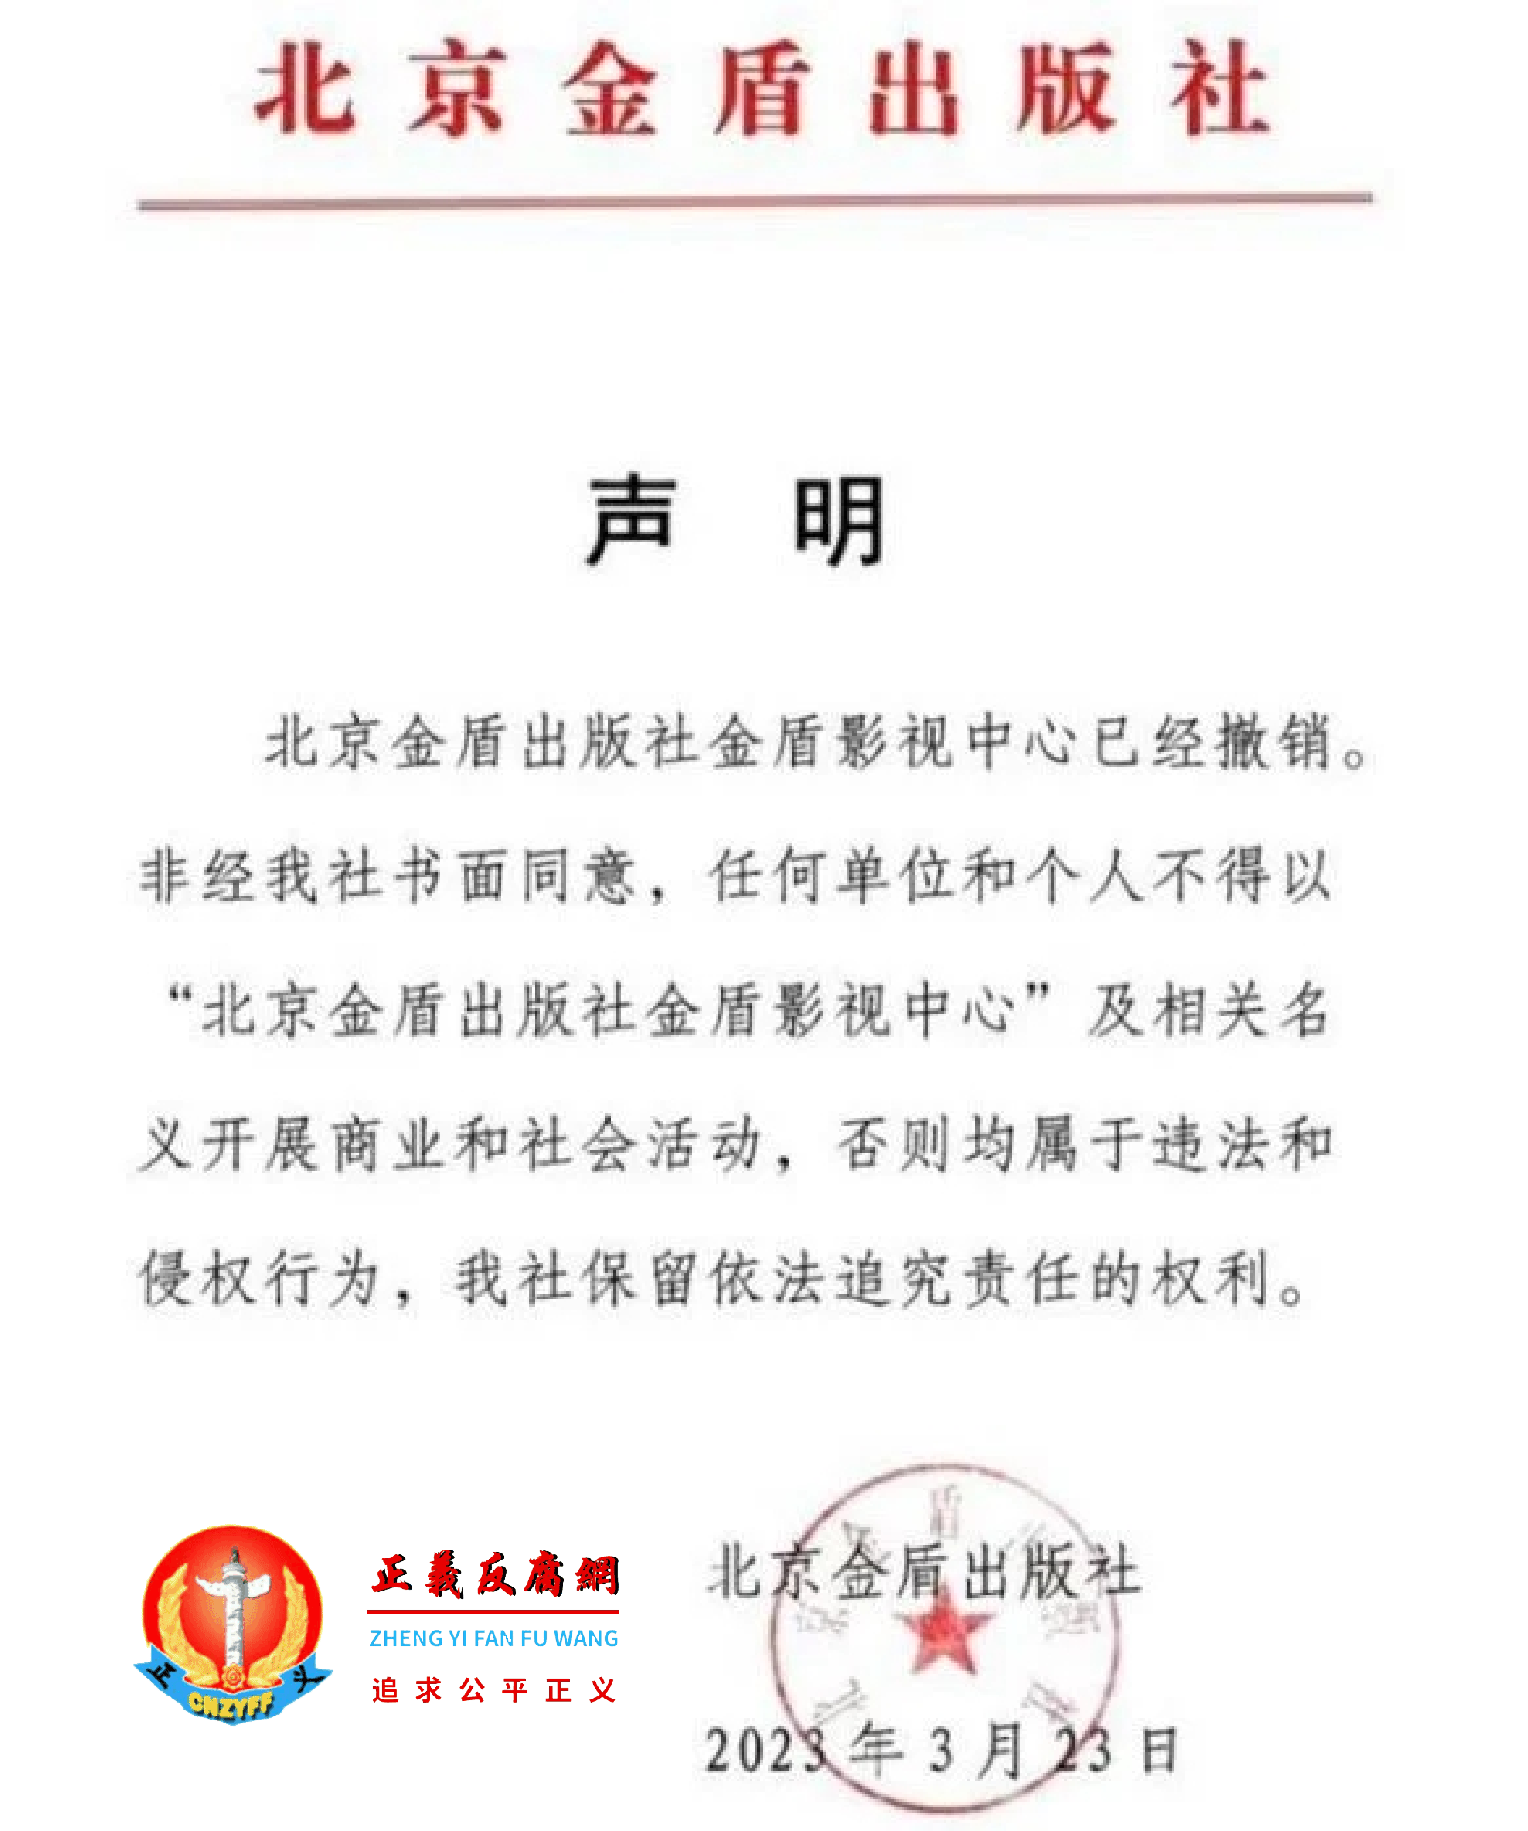 网络流传一份“北京金盾出版社”于2023年3月23日发出的声明。.png